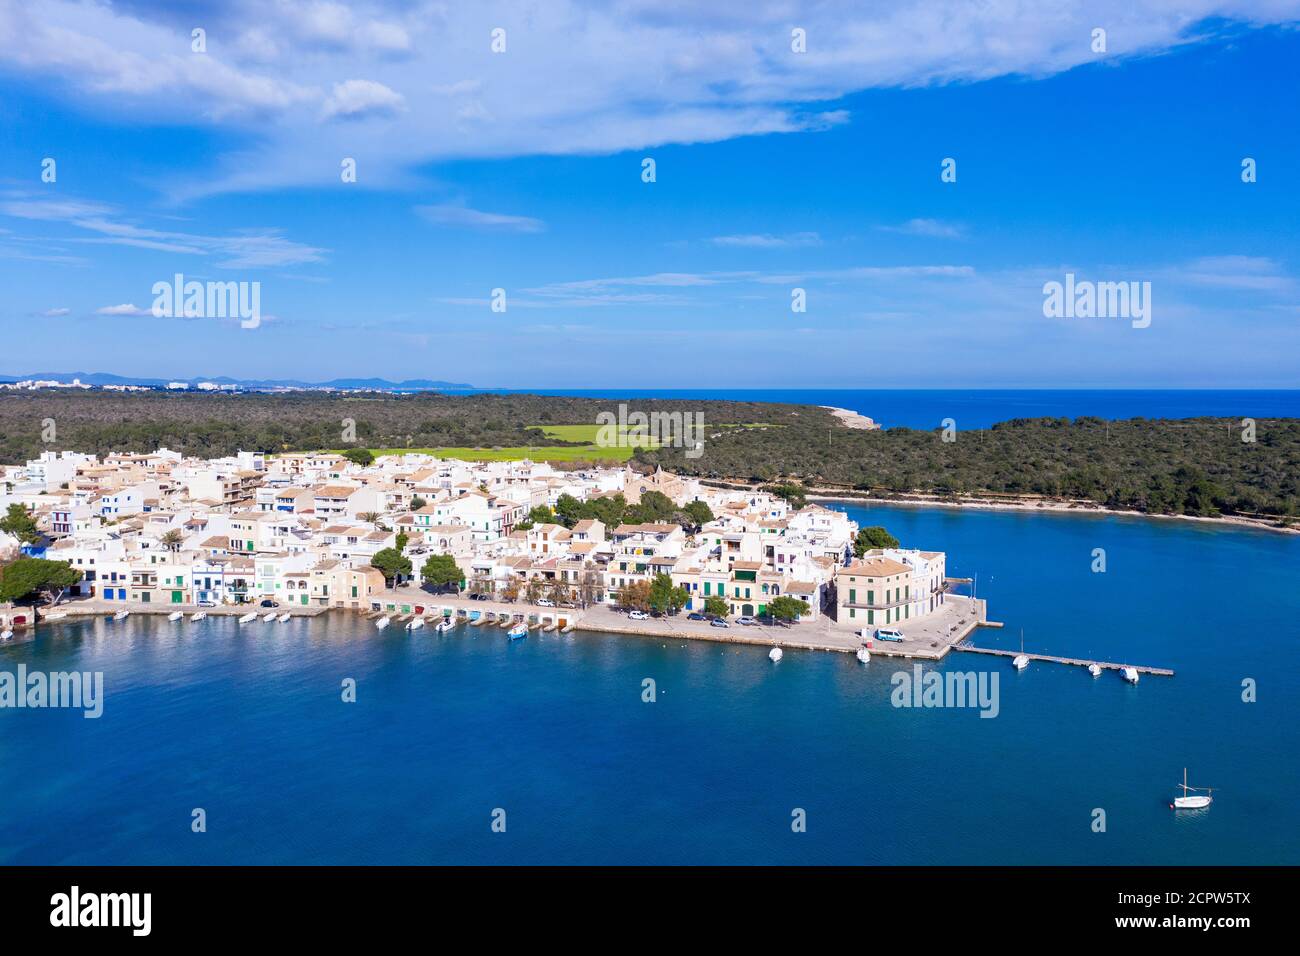 Portocolom, centre-ville historique, région de Migjorn, vue aérienne, Majorque, Iles Baléares, Espagne Banque D'Images